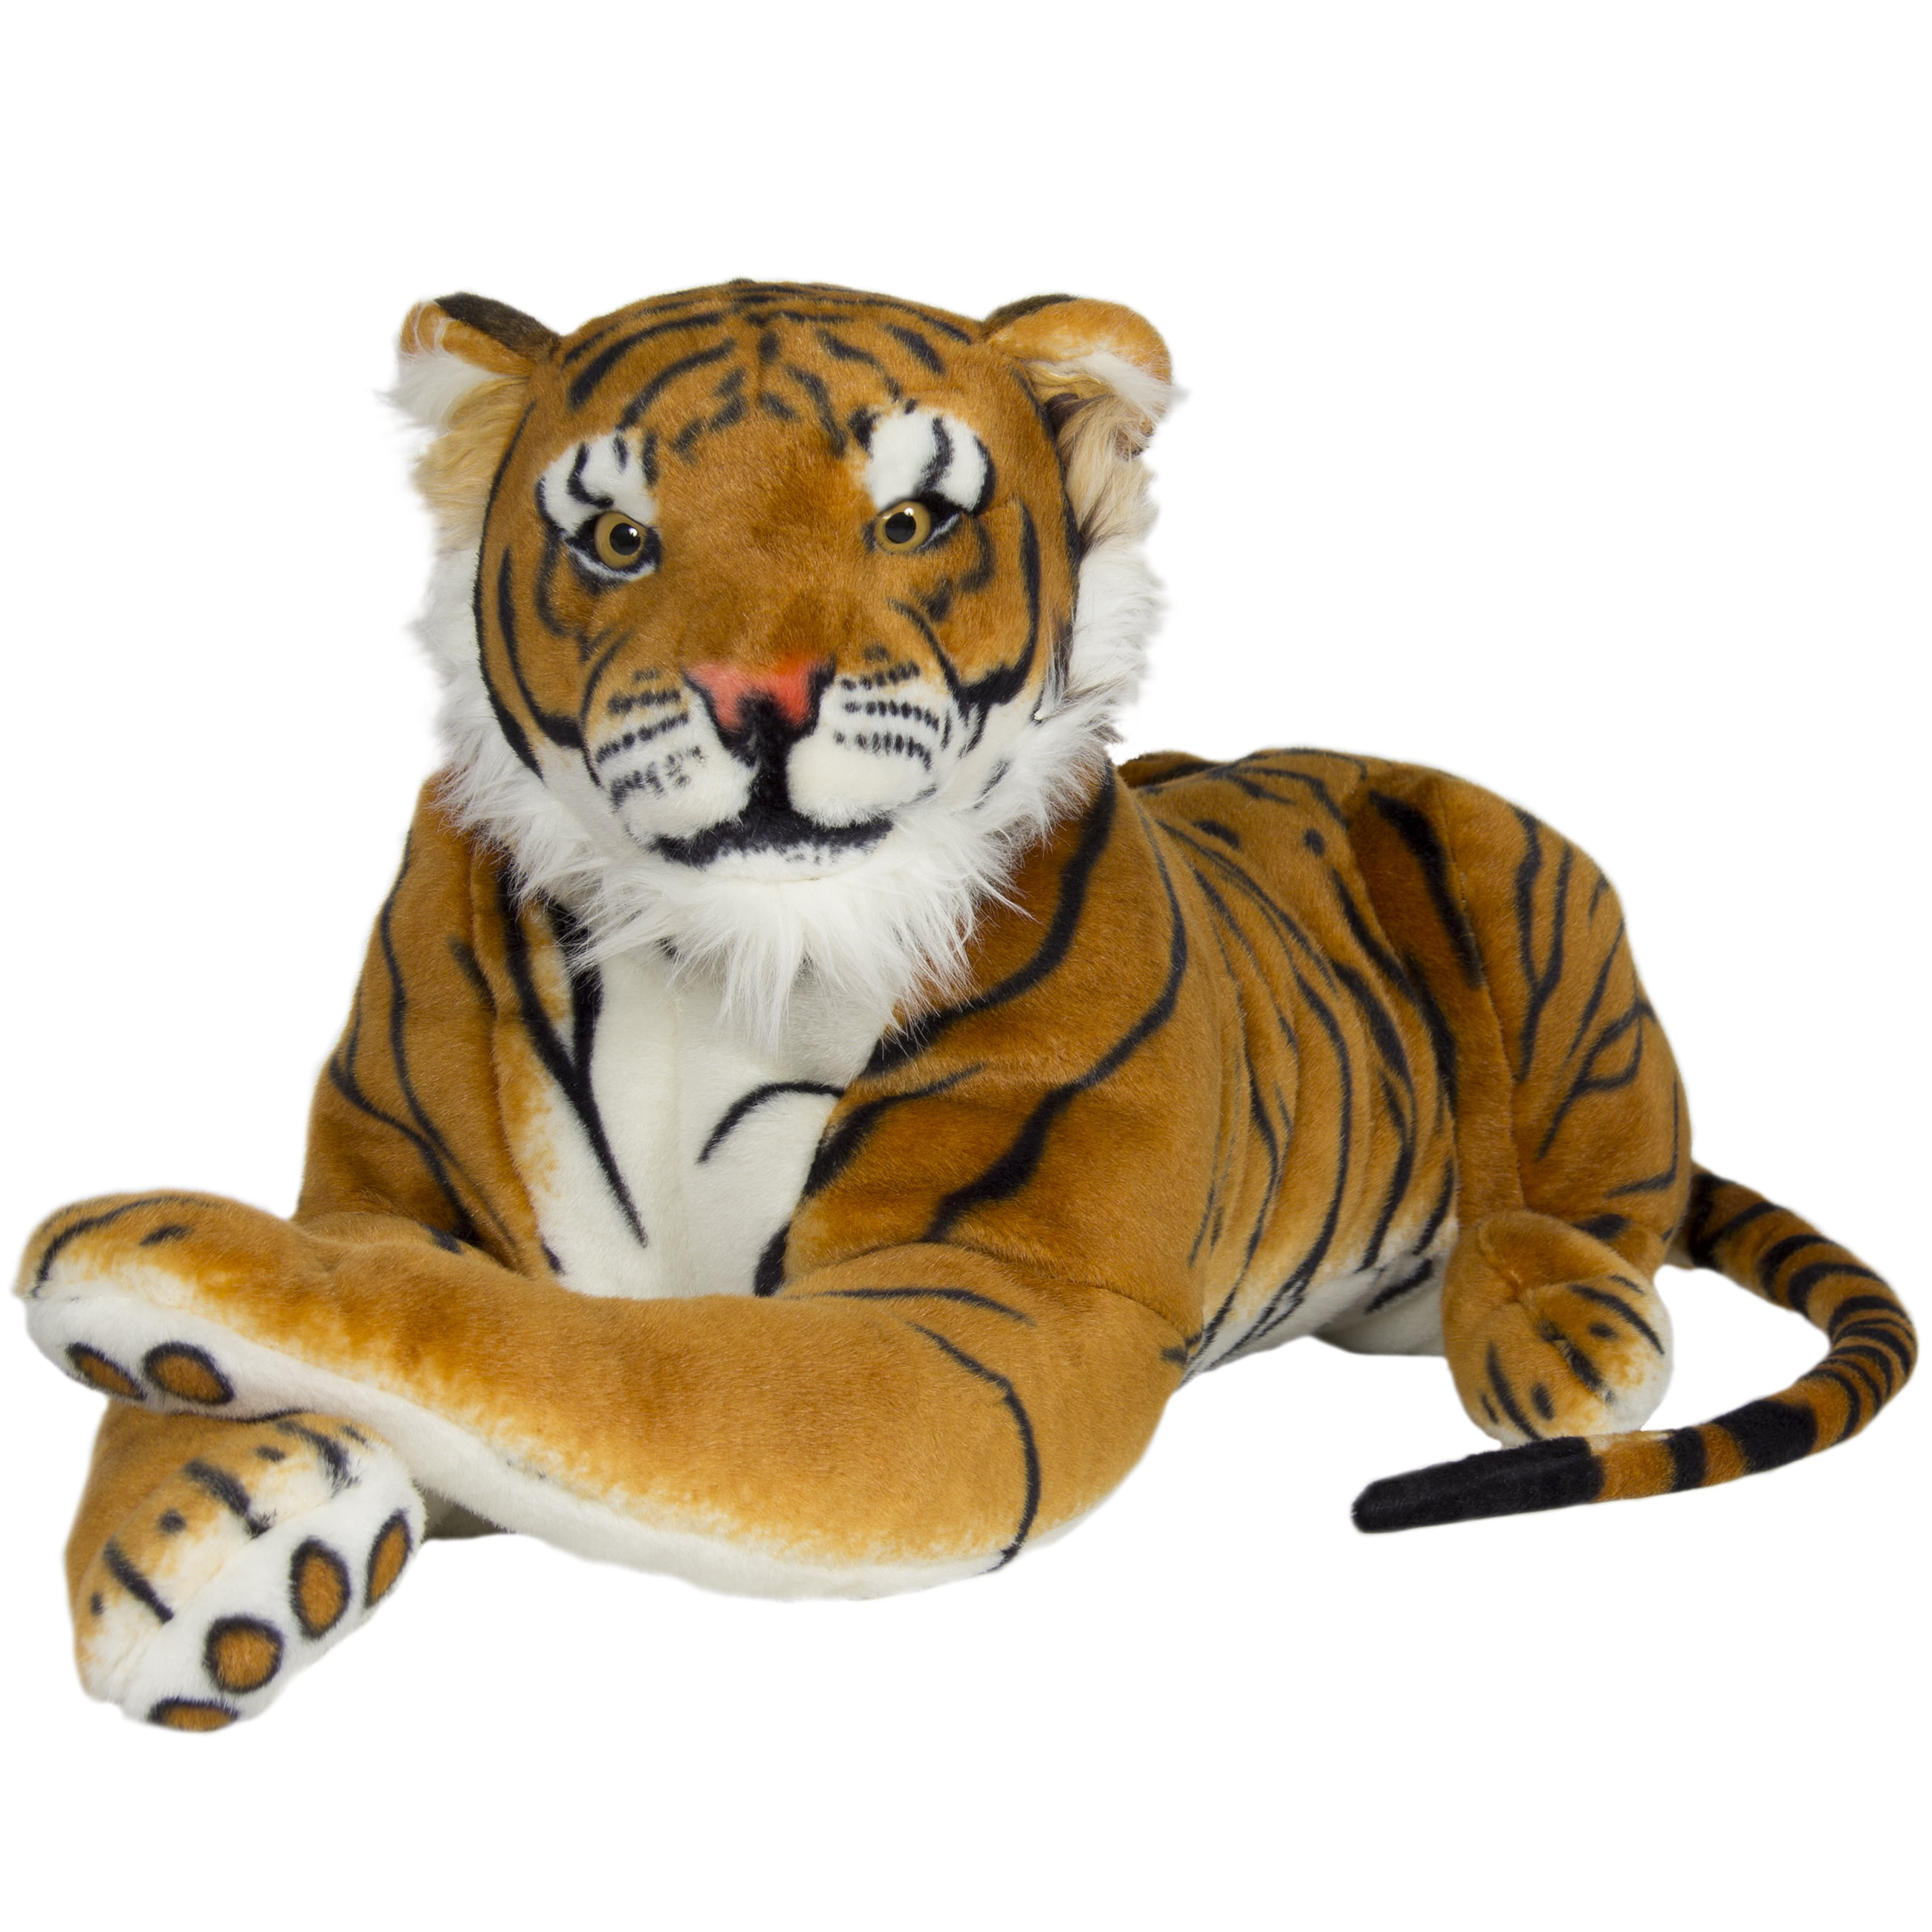 melissa and doug tiger stuffed animal